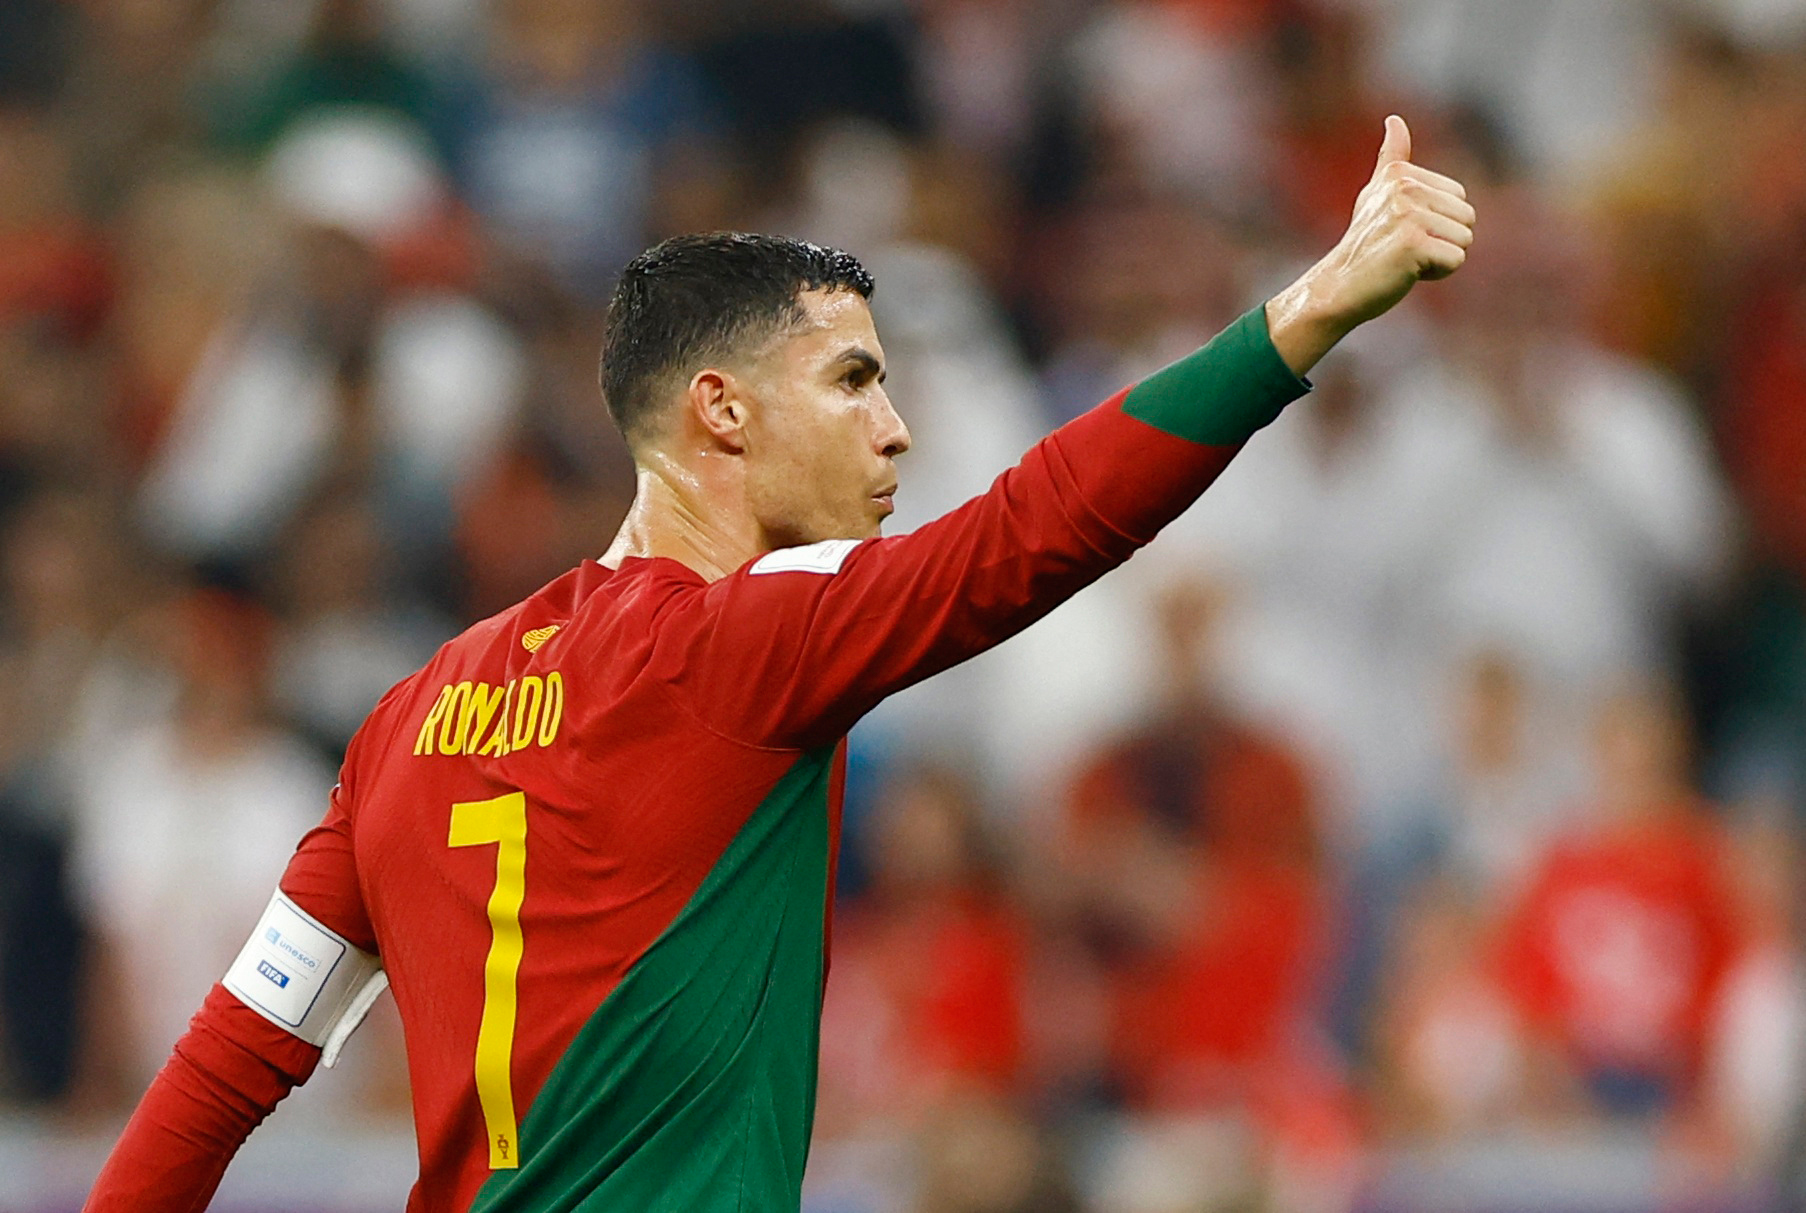 Cơ hội cuối của Ronaldo Ronaldo đang có cơ hội cuối để giành chiến thắng cho đội tuyển quốc gia của mình tại World Cup